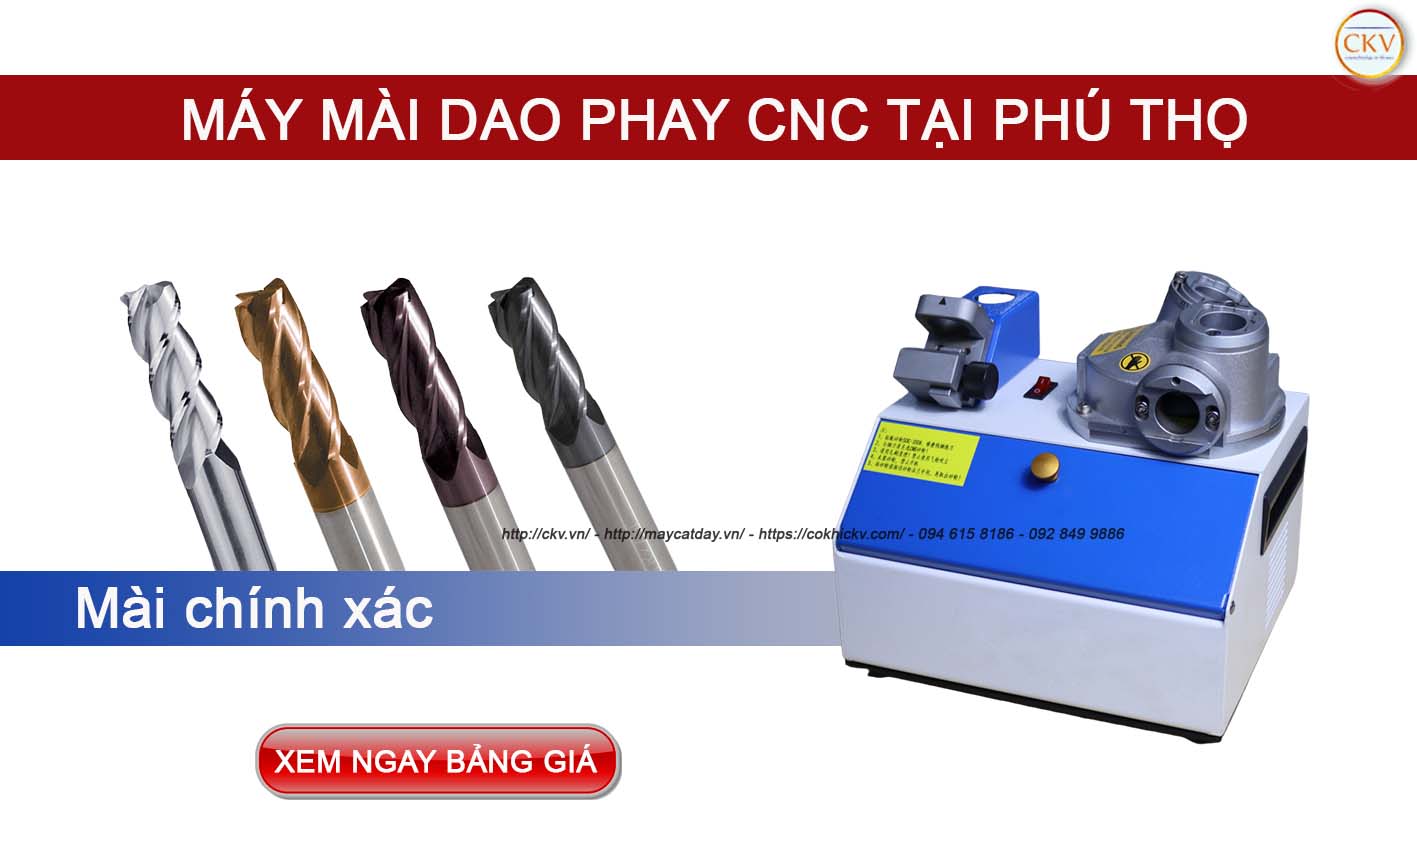 Mua máy mài dao phay CNC giá tốt tại Phú Thọ